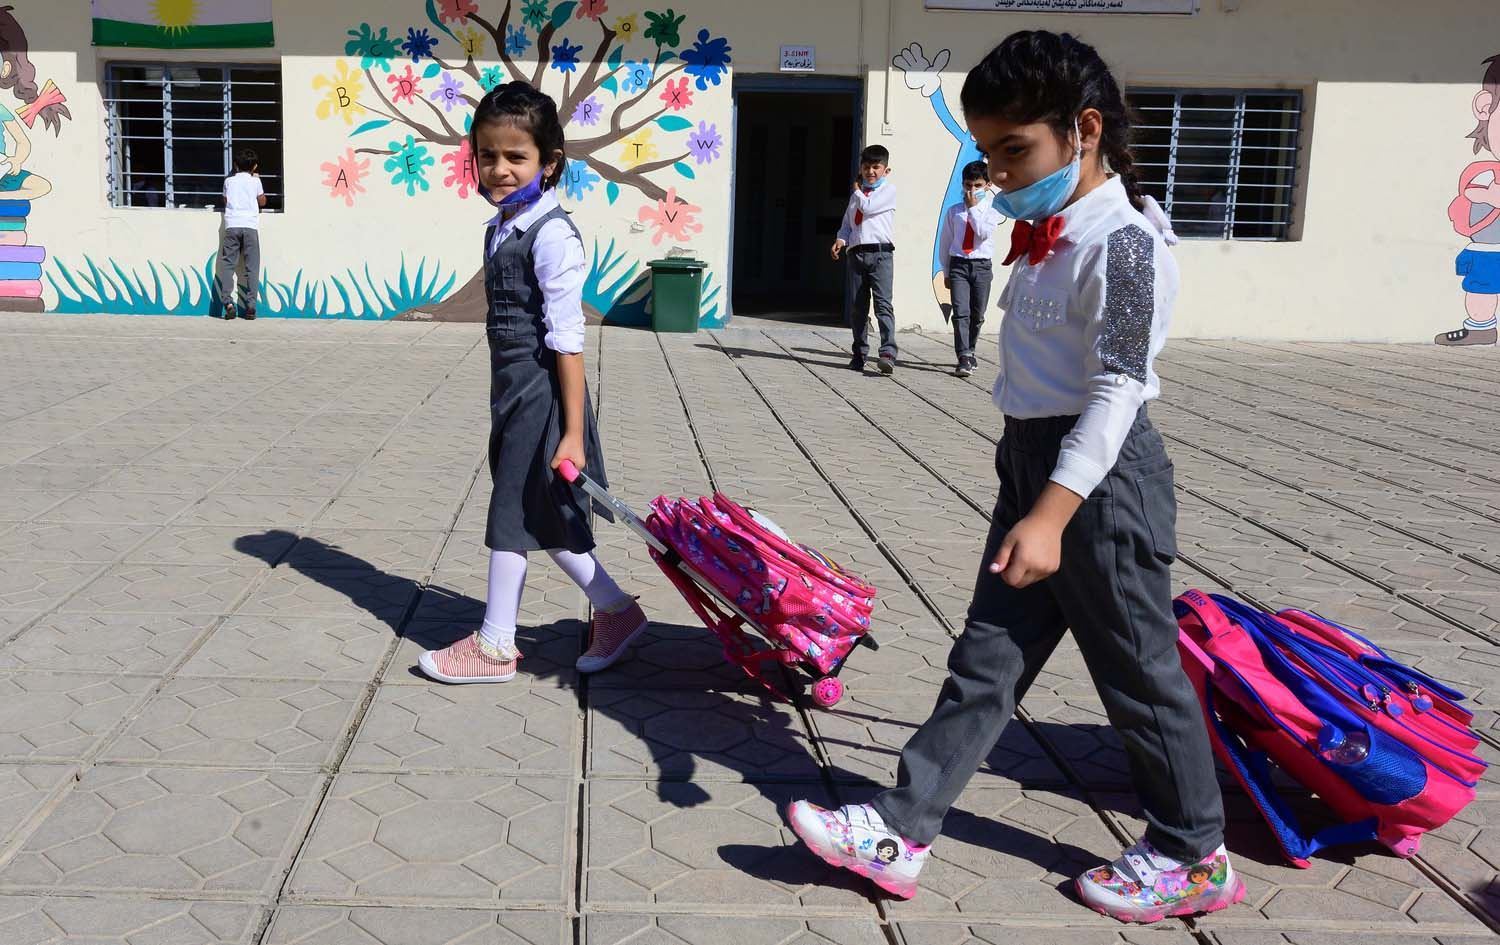 تربية إقليم كوردستان تقرر استئناف الدوام في المدارس بـ"التناوب" غداً الأحد